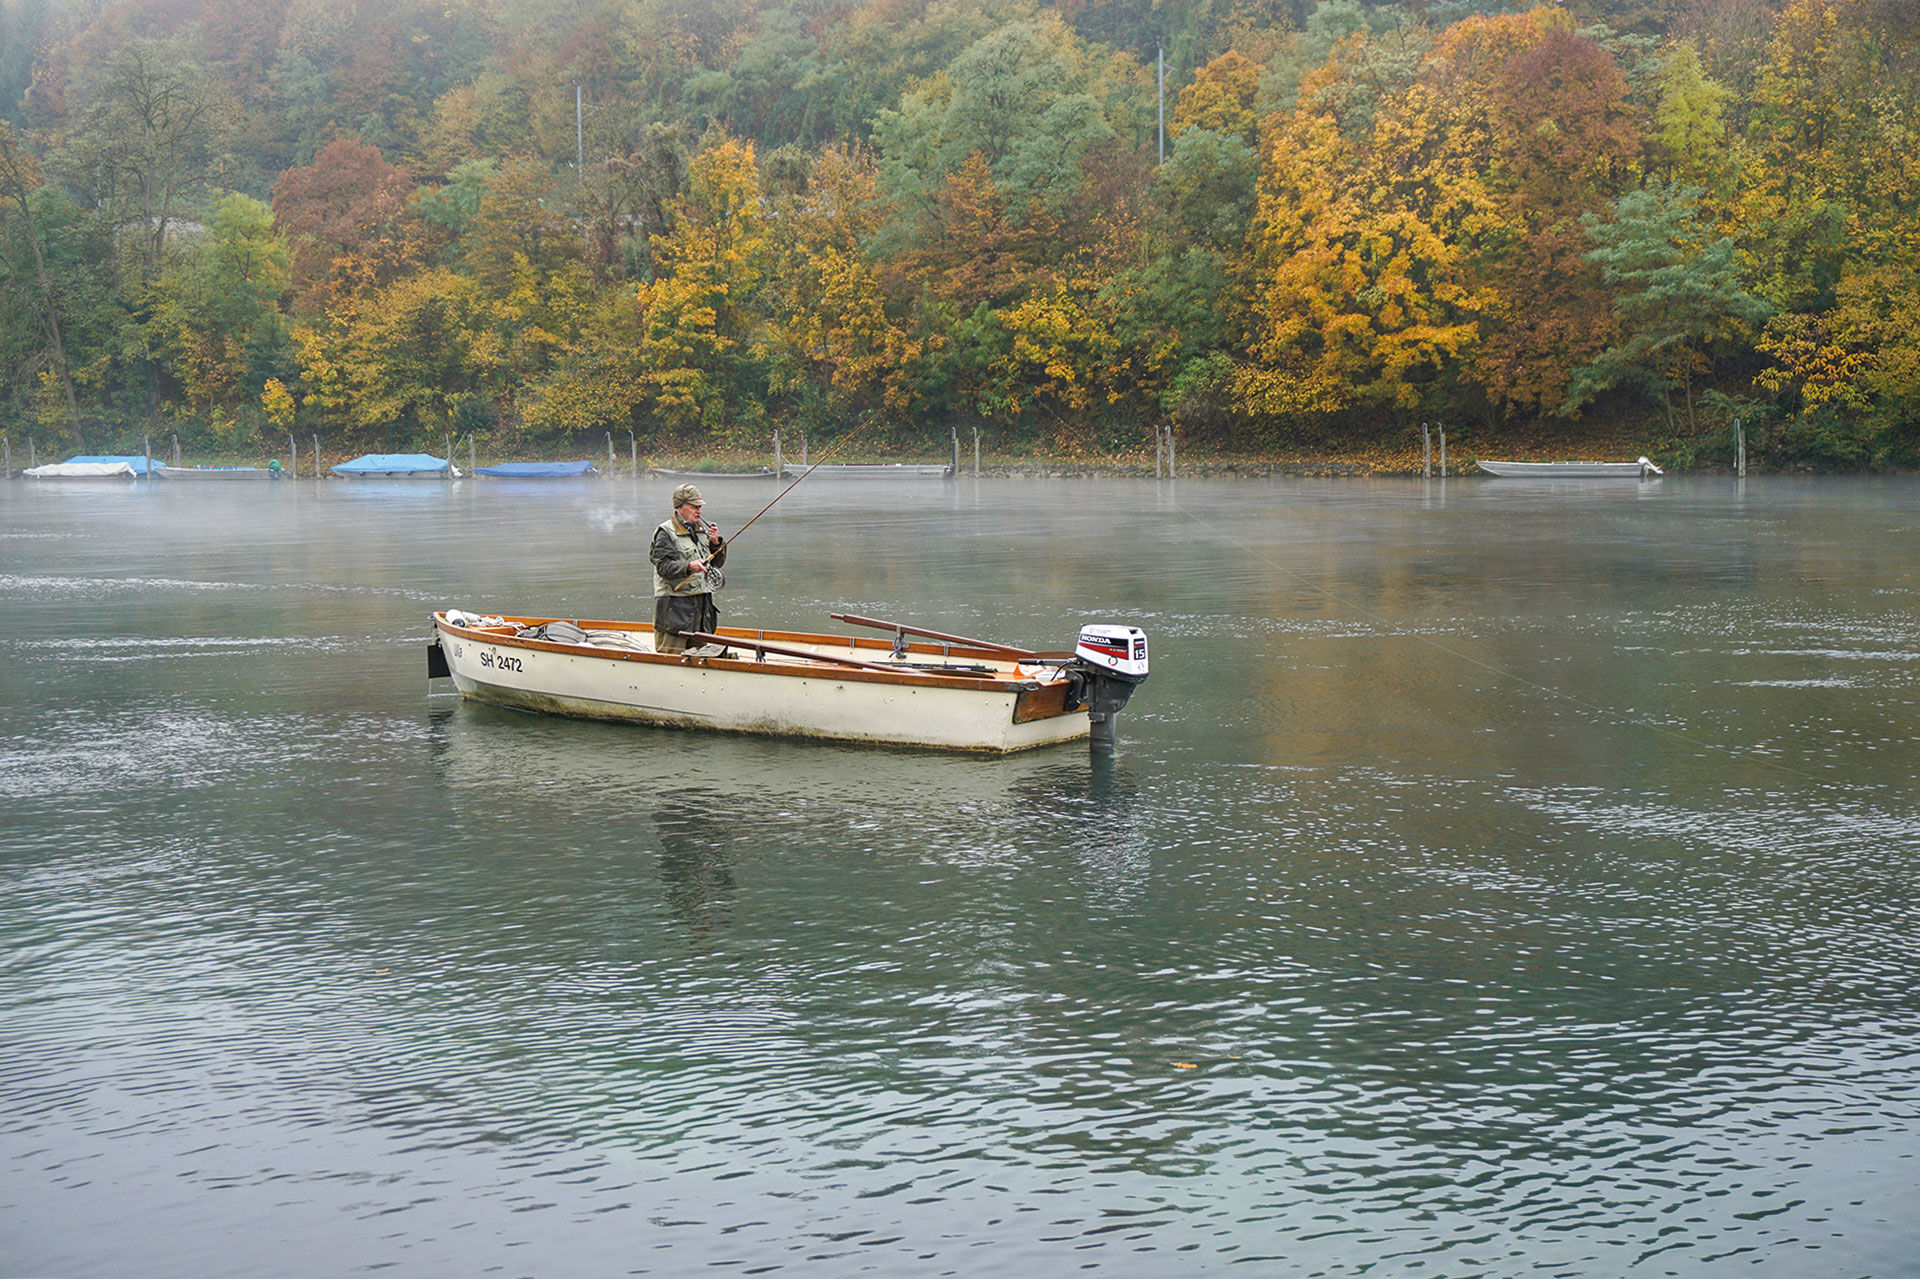  Äschenfischer auf dem Rhein; Tempi passati? © Erich Bolli  